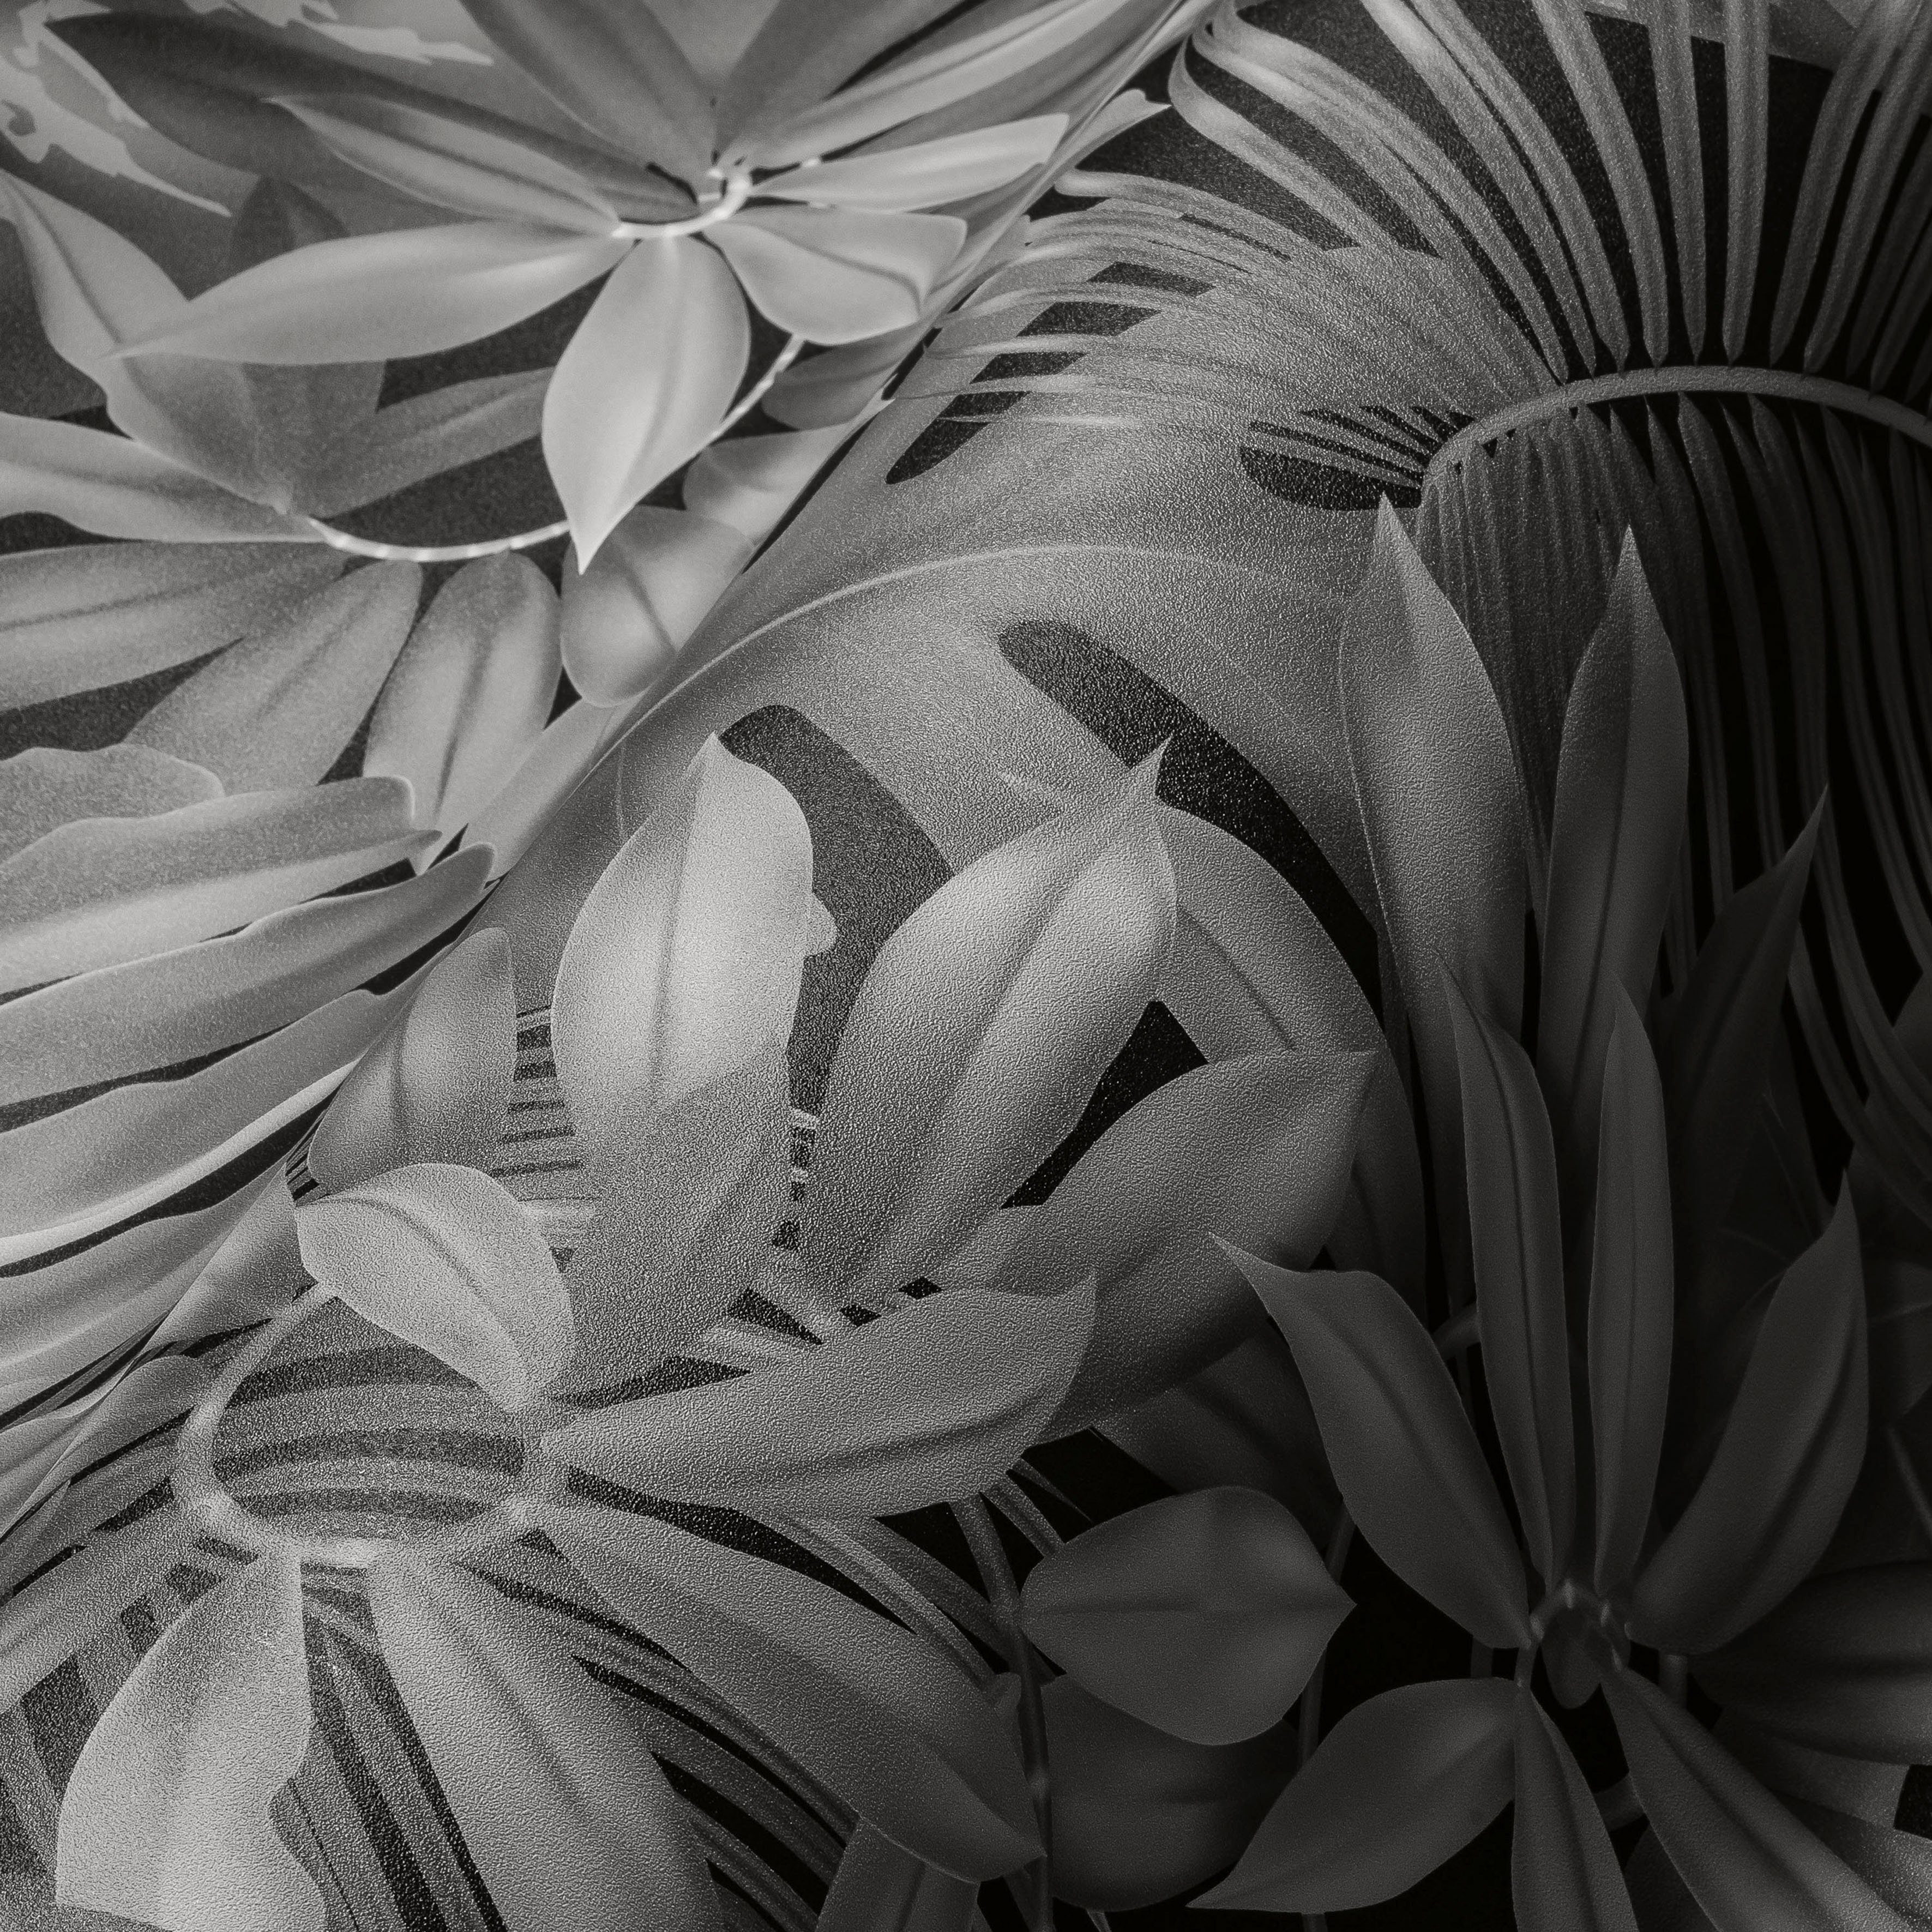 Dschungel A.S. glatt, matt, St), (1 PintWalls Blätter, Dschungeltapete Vliestapete grau/schwarz Création